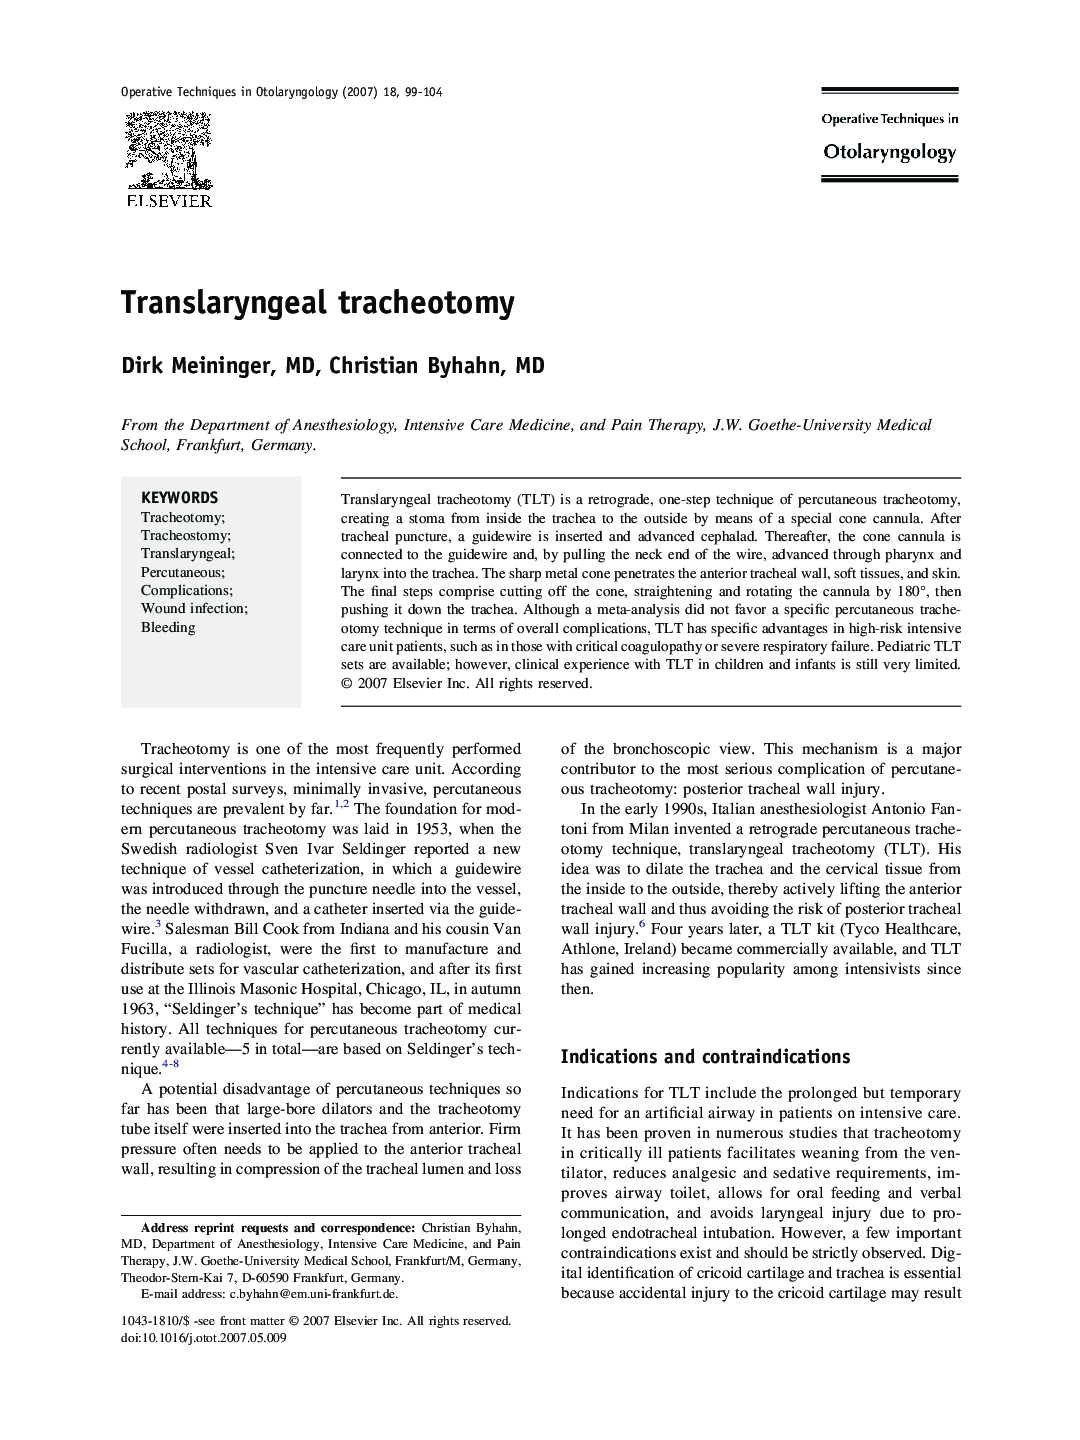 Translaryngeal tracheotomy